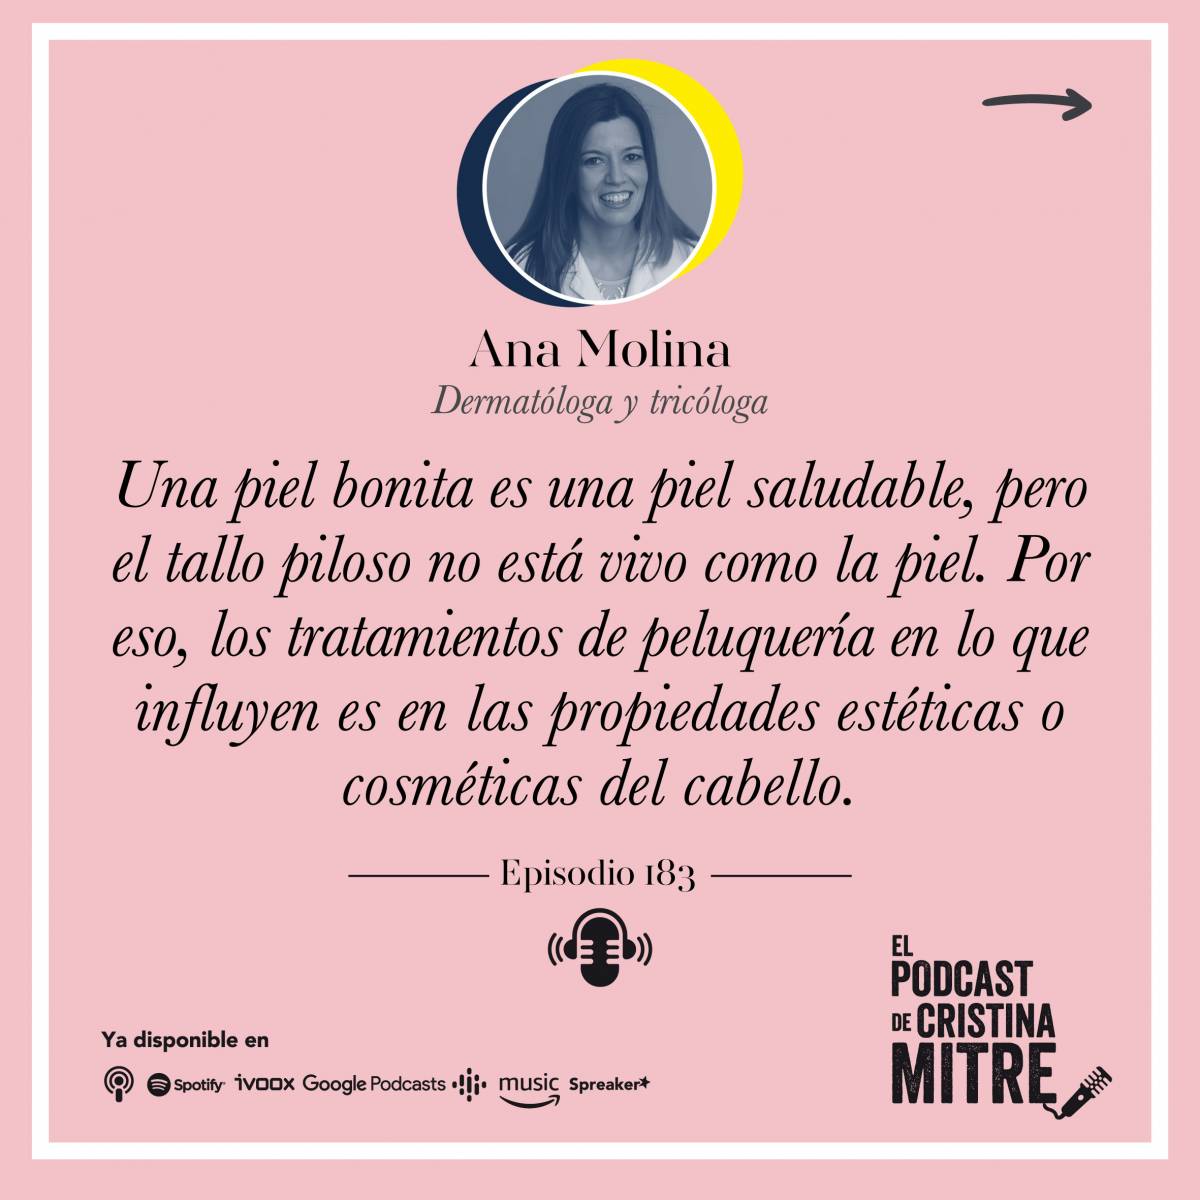 El Podcast de Cristina Mitre Dra. Molina Pelo 